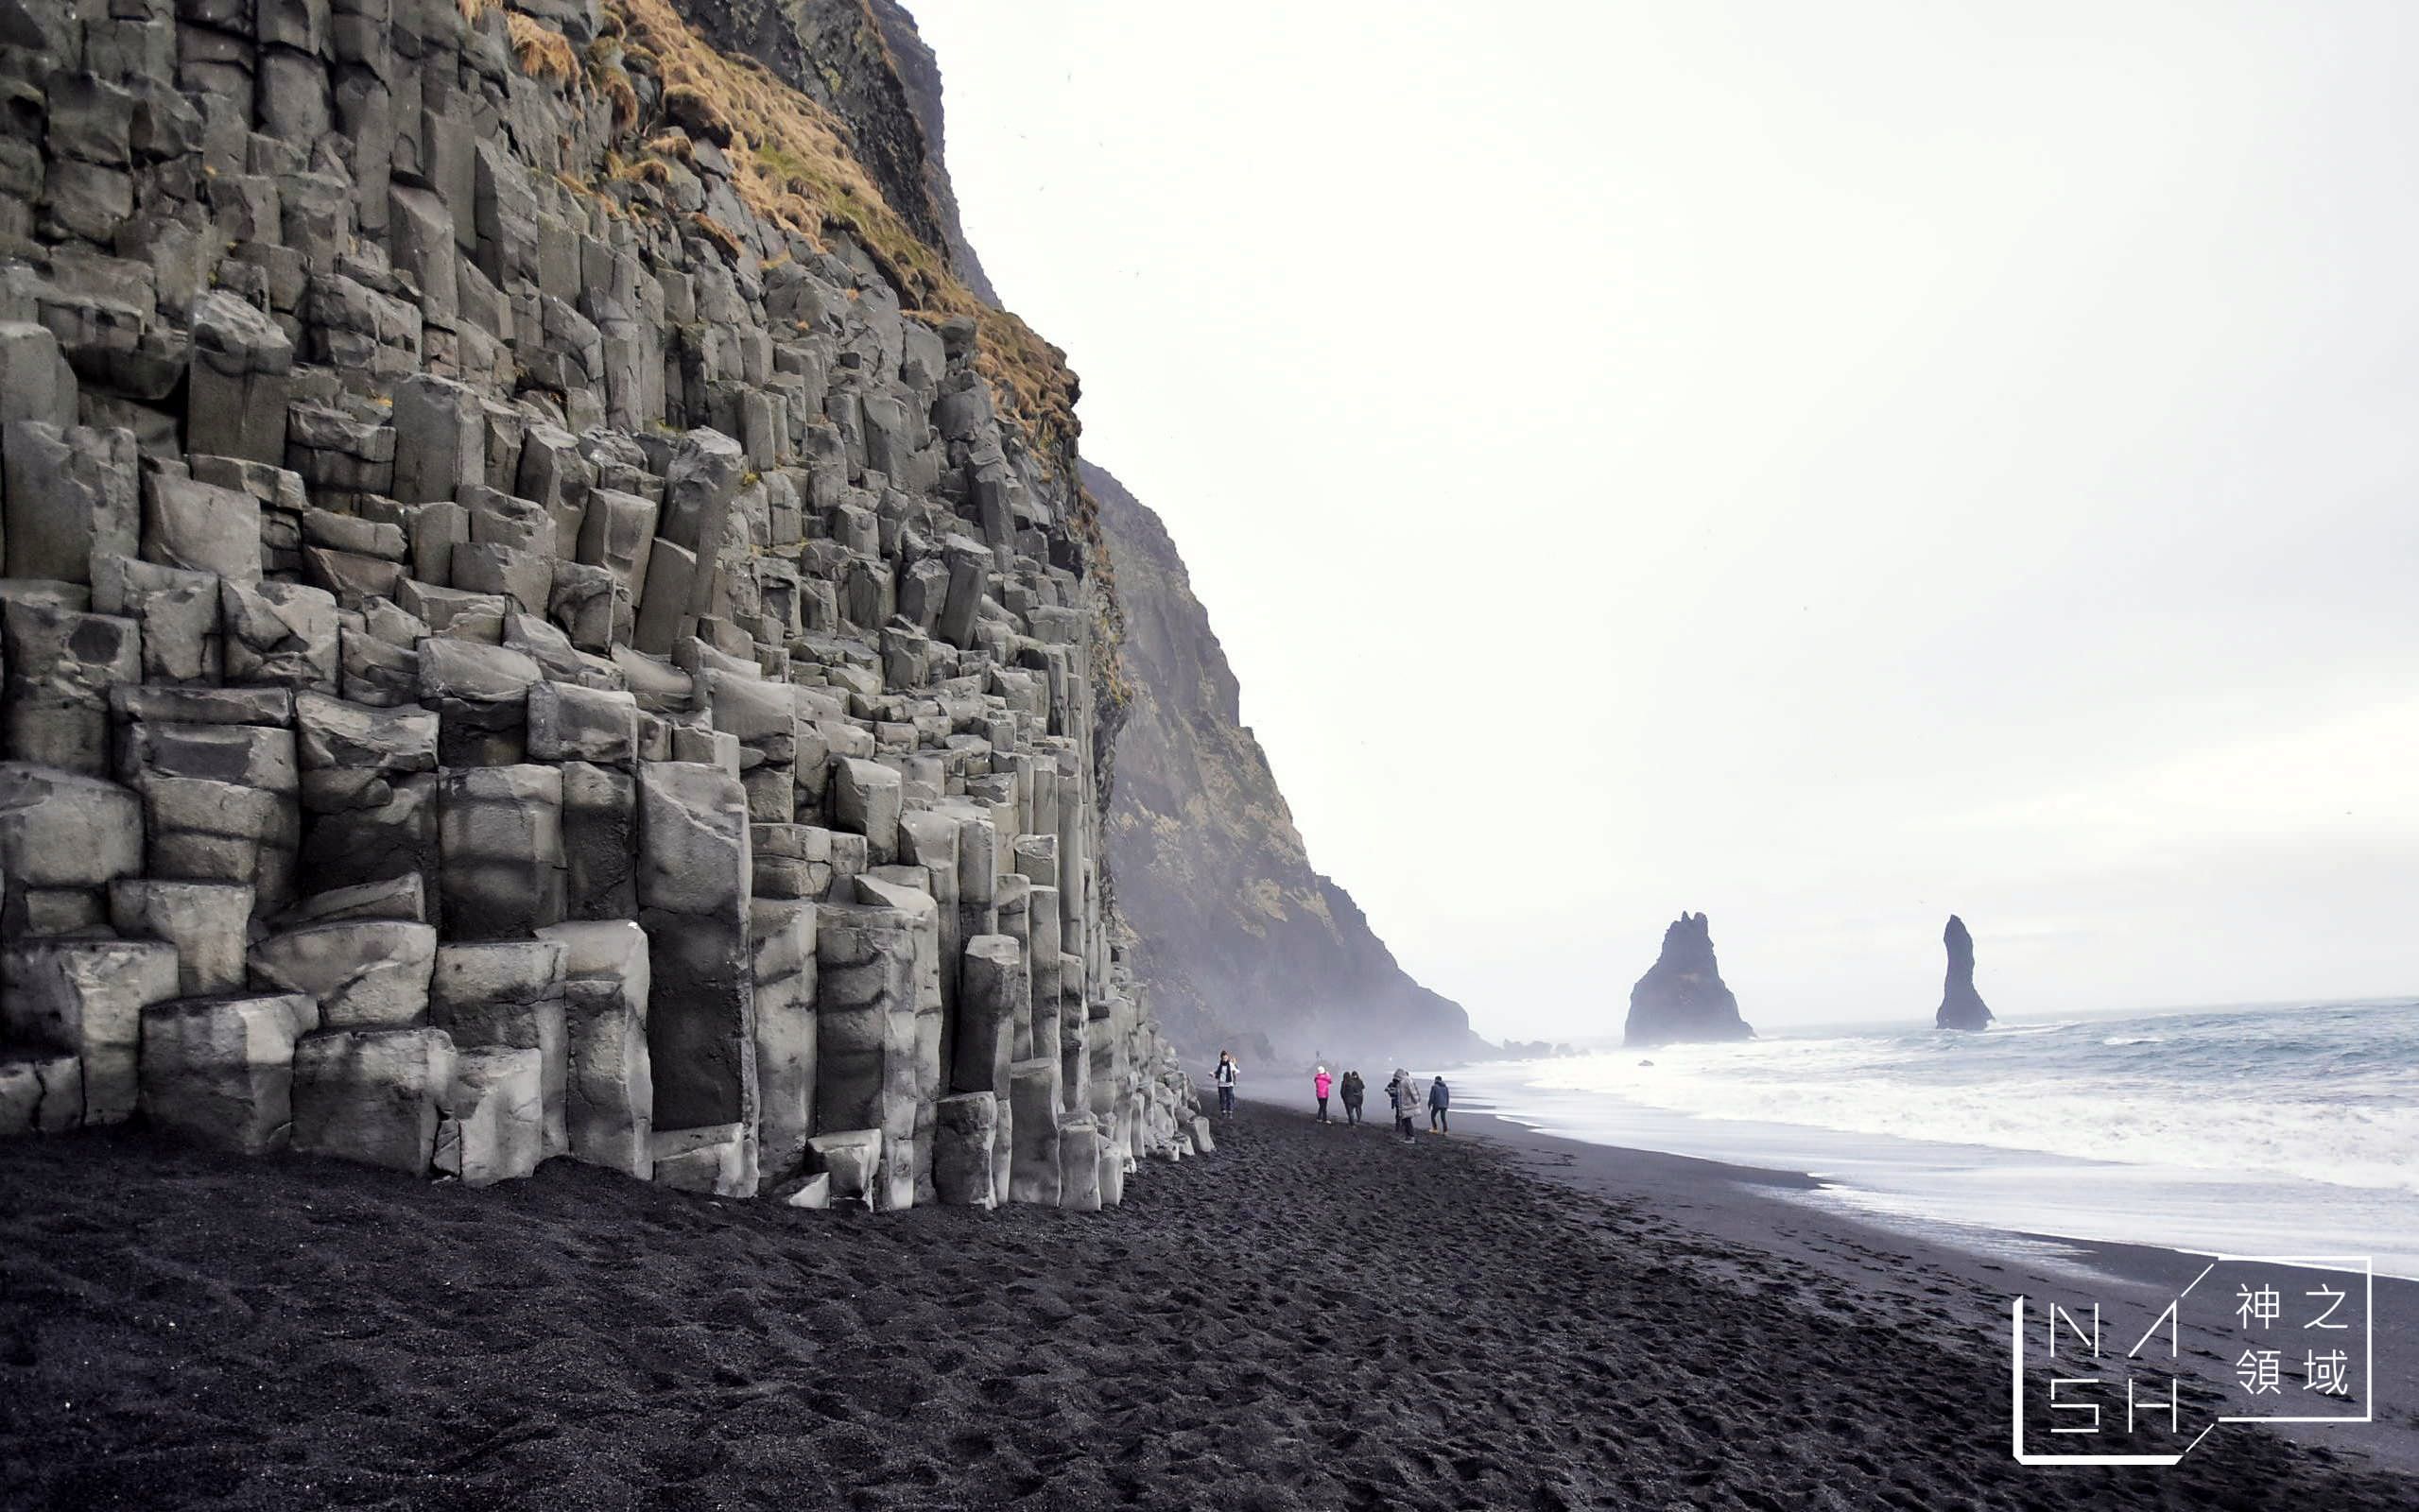 黑沙灘,Reynisfjara Beach,冰島自由行環島景點推薦,冰島自助景點推薦